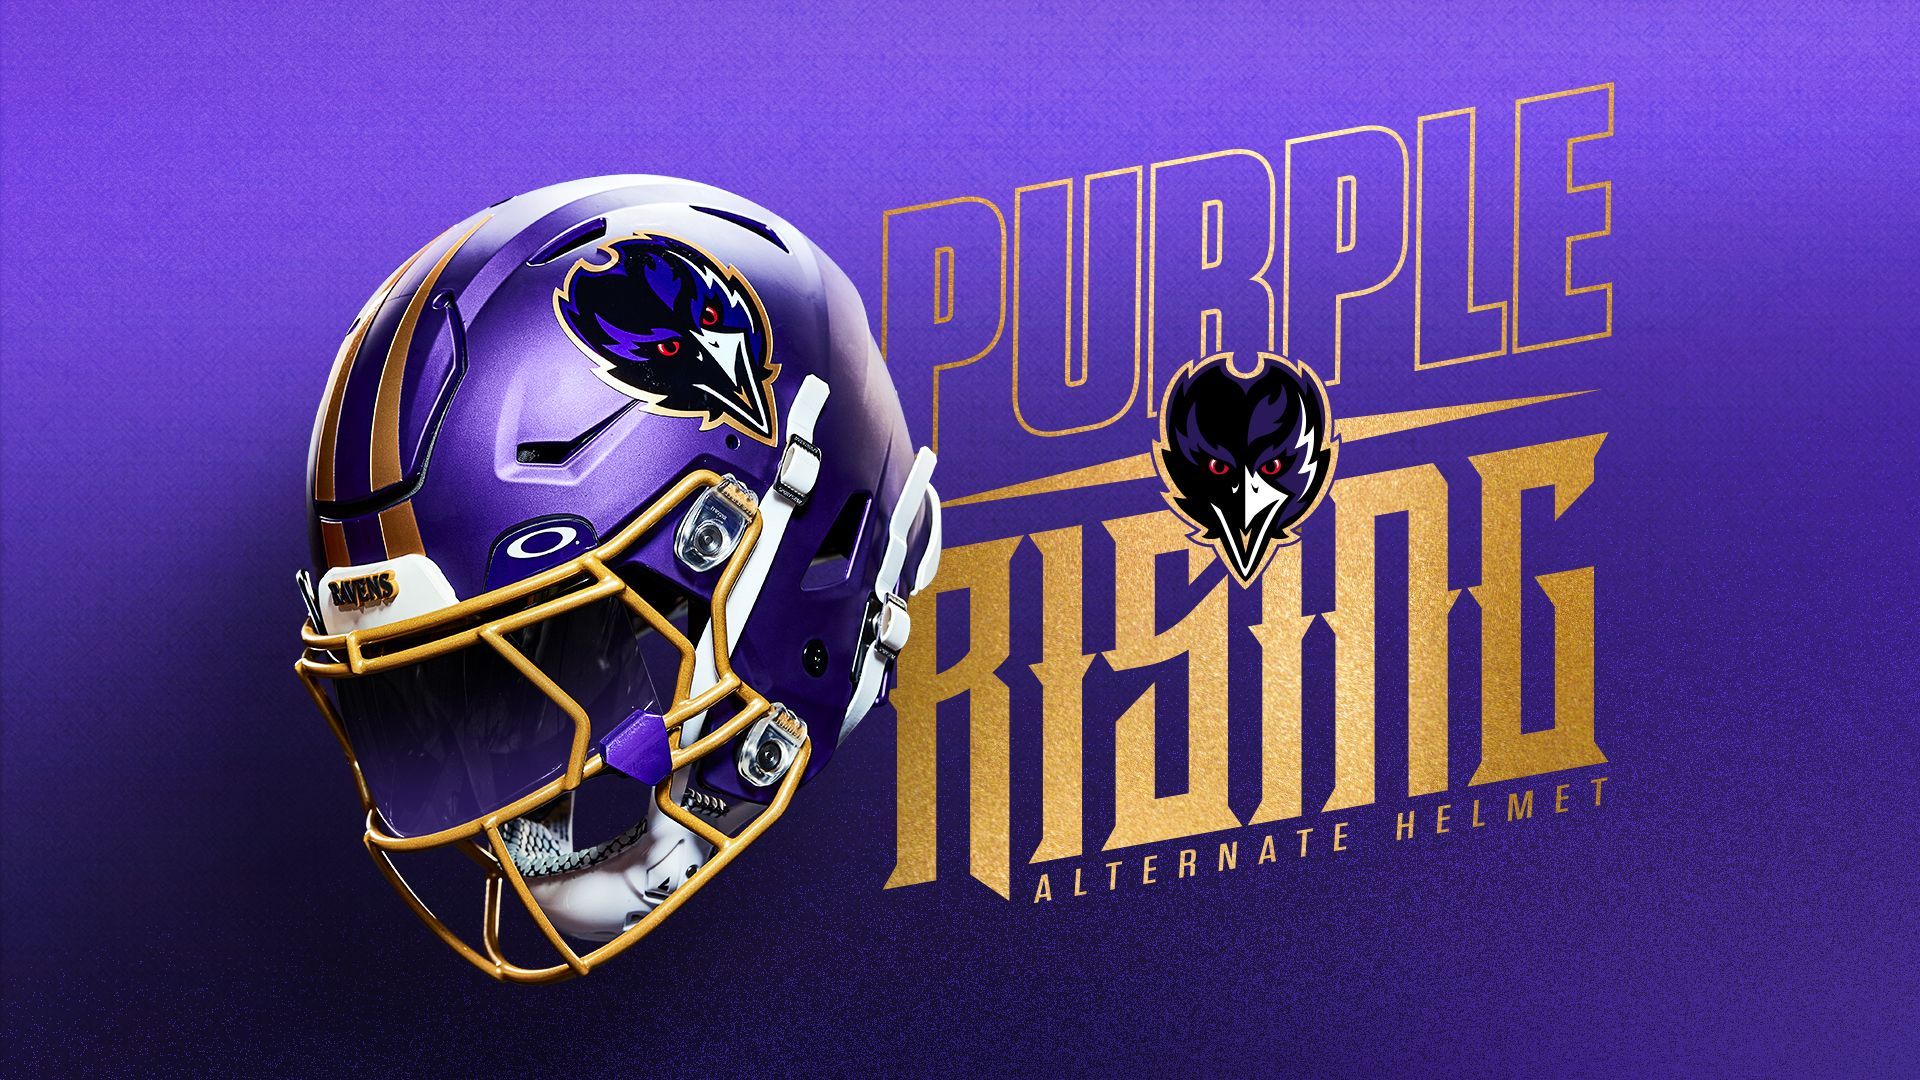 <strong>Baltimore Ravens</strong><br>Neuer Look für die Ravens! Baltimore hat einen "alternate Helmet" veröffentlicht, der beinahe komplett in Lila gehalten ist. Wenige goldene und weiße Elemente, sowie das Logo machen den Look perfekt. "Purple Rising", also "violetter Aufstieg", lautet das Motto. Darauf haben viele Ravens-Fans schon lange gewartet...